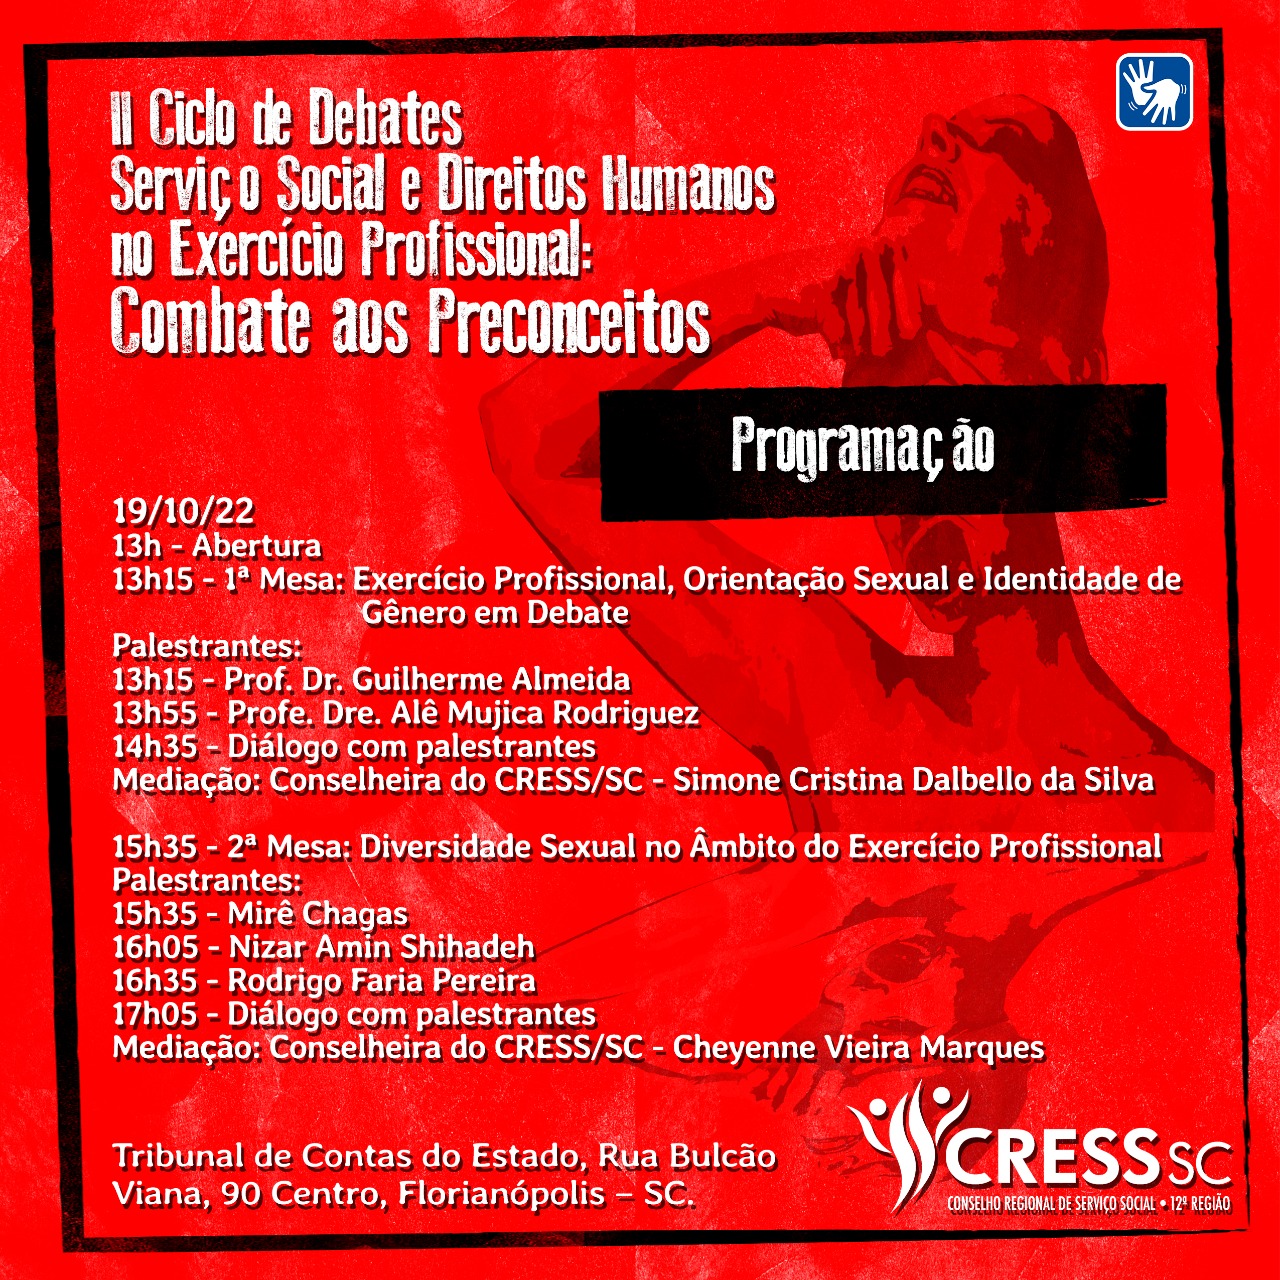 CRESS RS SC e PR ratificam a nota do CRESS CE, do SINPRECE e da frente  cearense em defesa da Seguridade Social - CRESS-PR